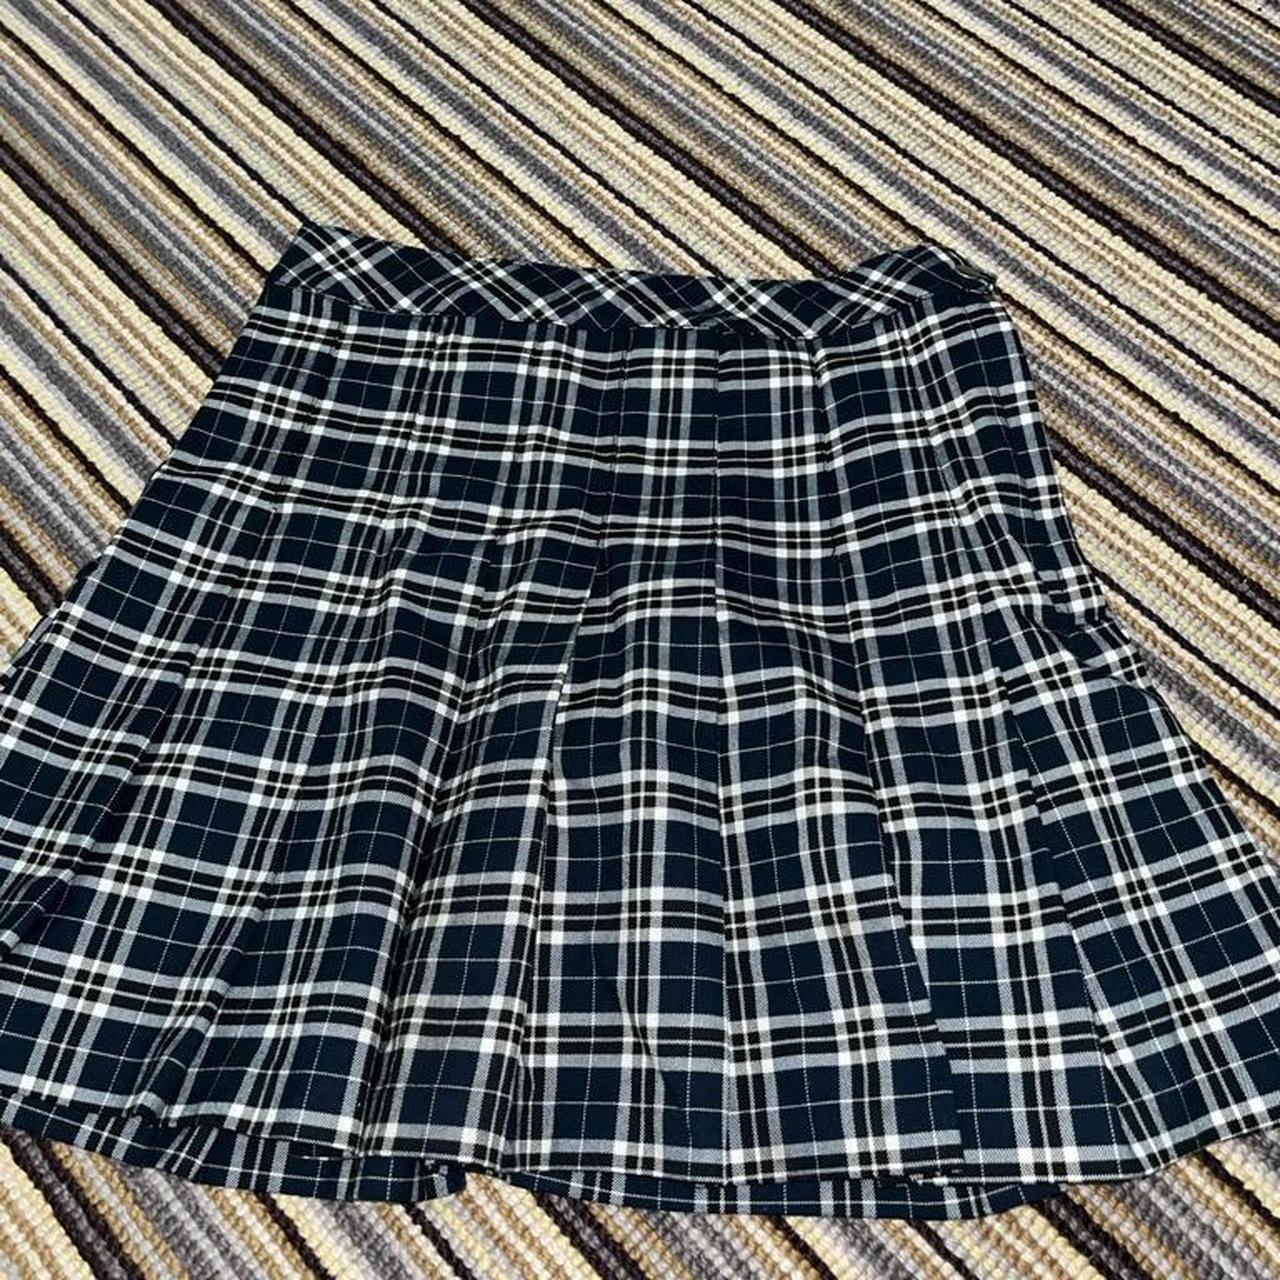 Mini checkered skirt never been worn size 8 - Depop